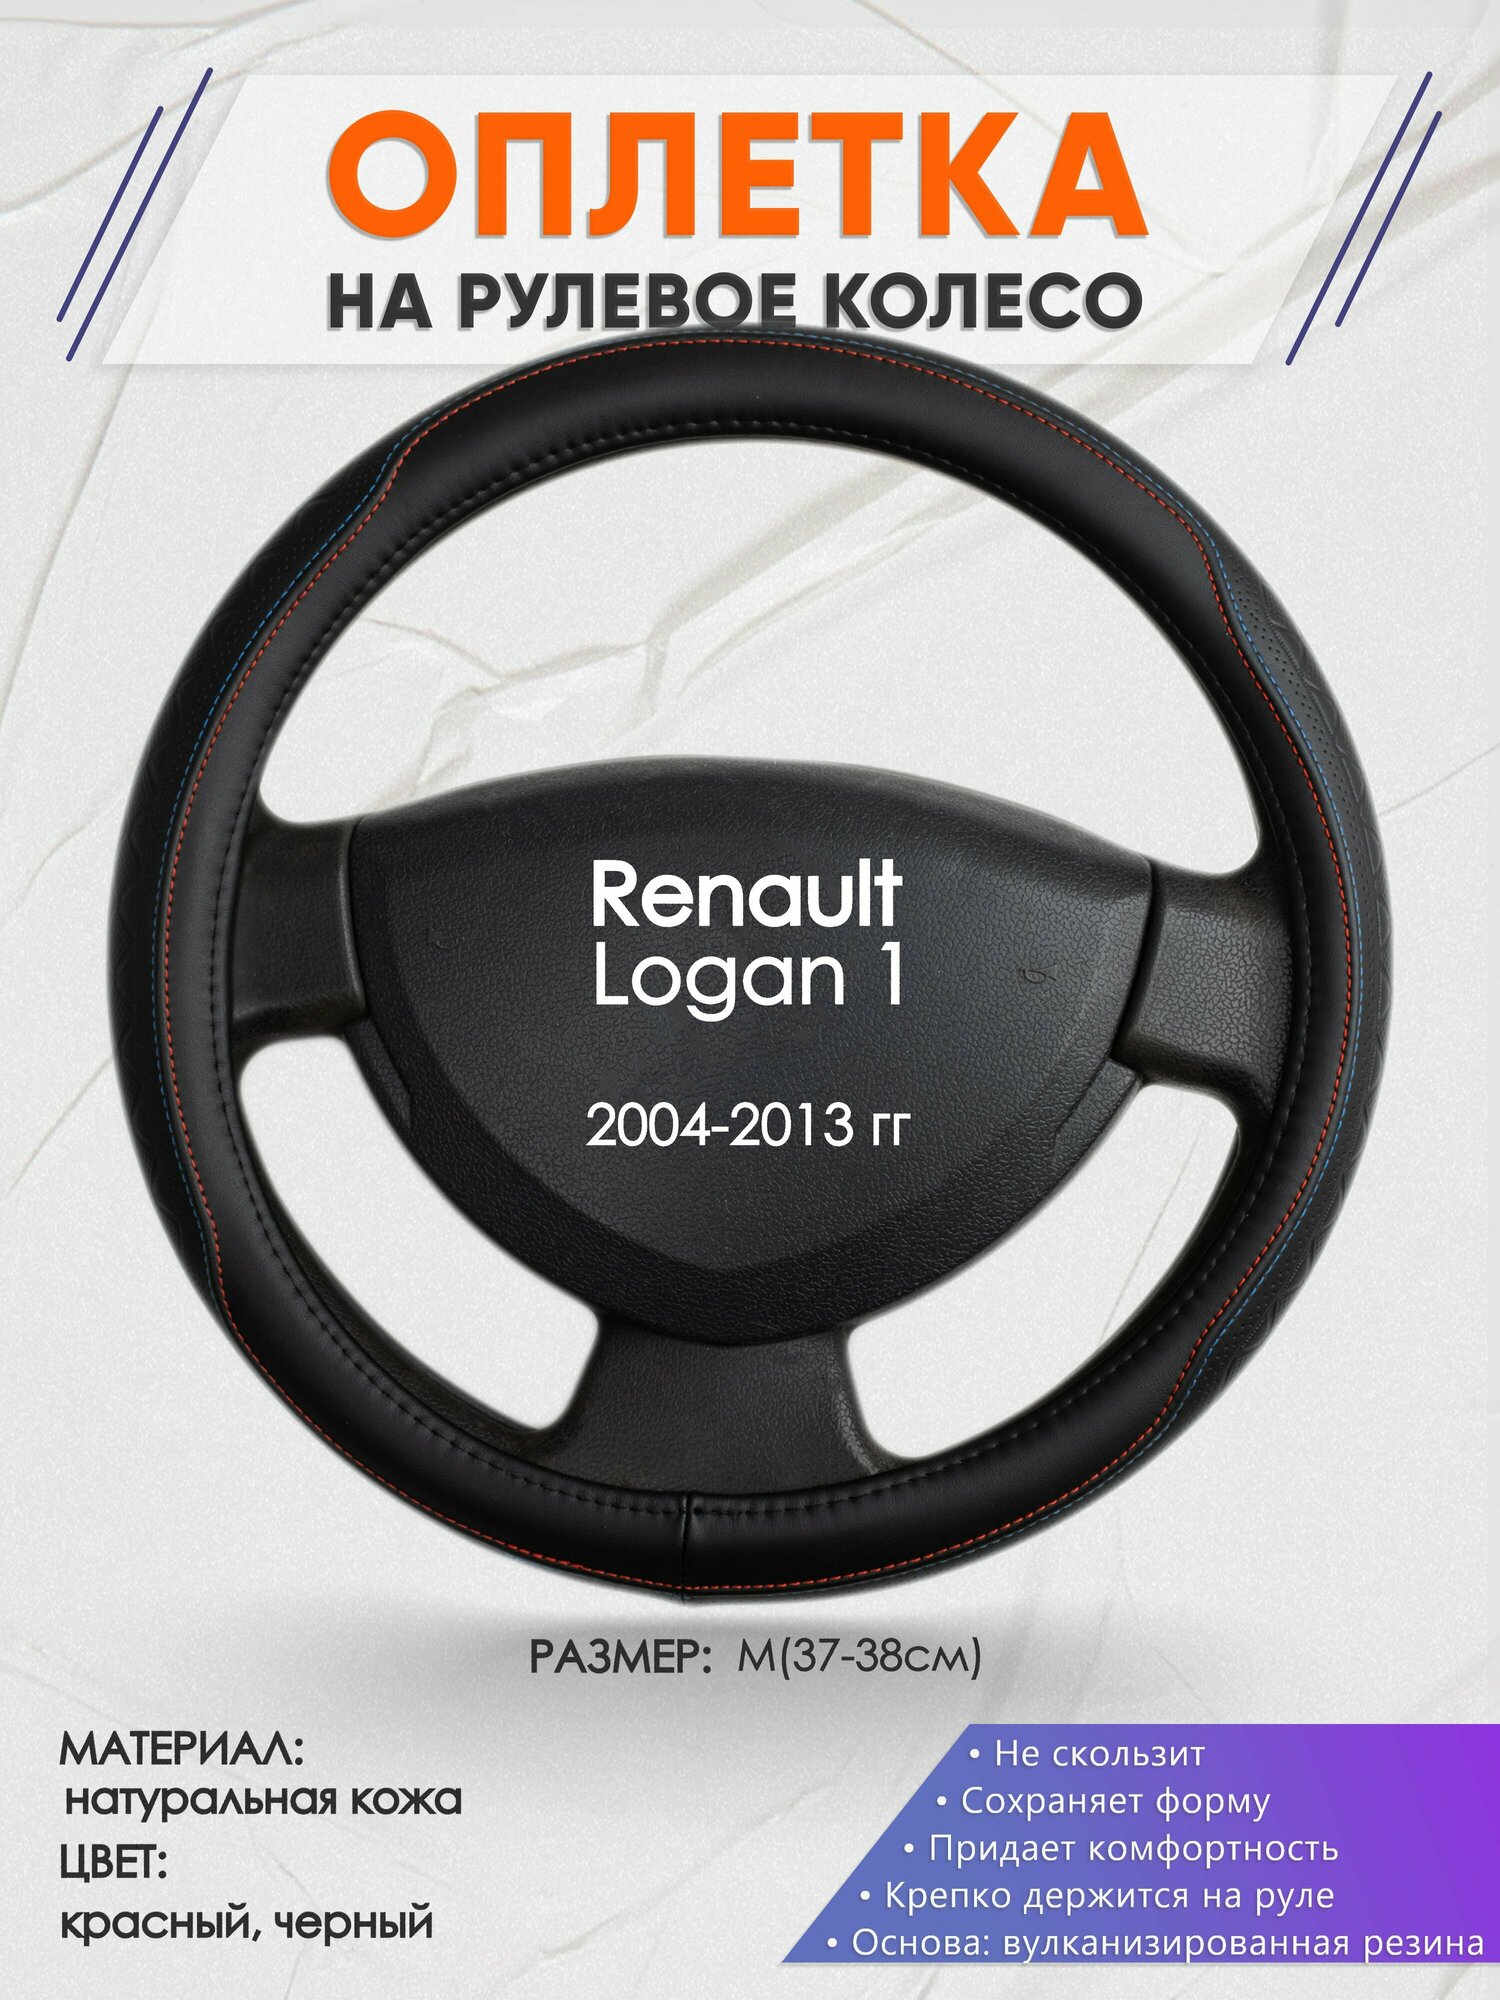 Оплетка на руль для Renault Logan 1(Рено Логан 1) 2004-2013, M(37-38см), Натуральная кожа 89